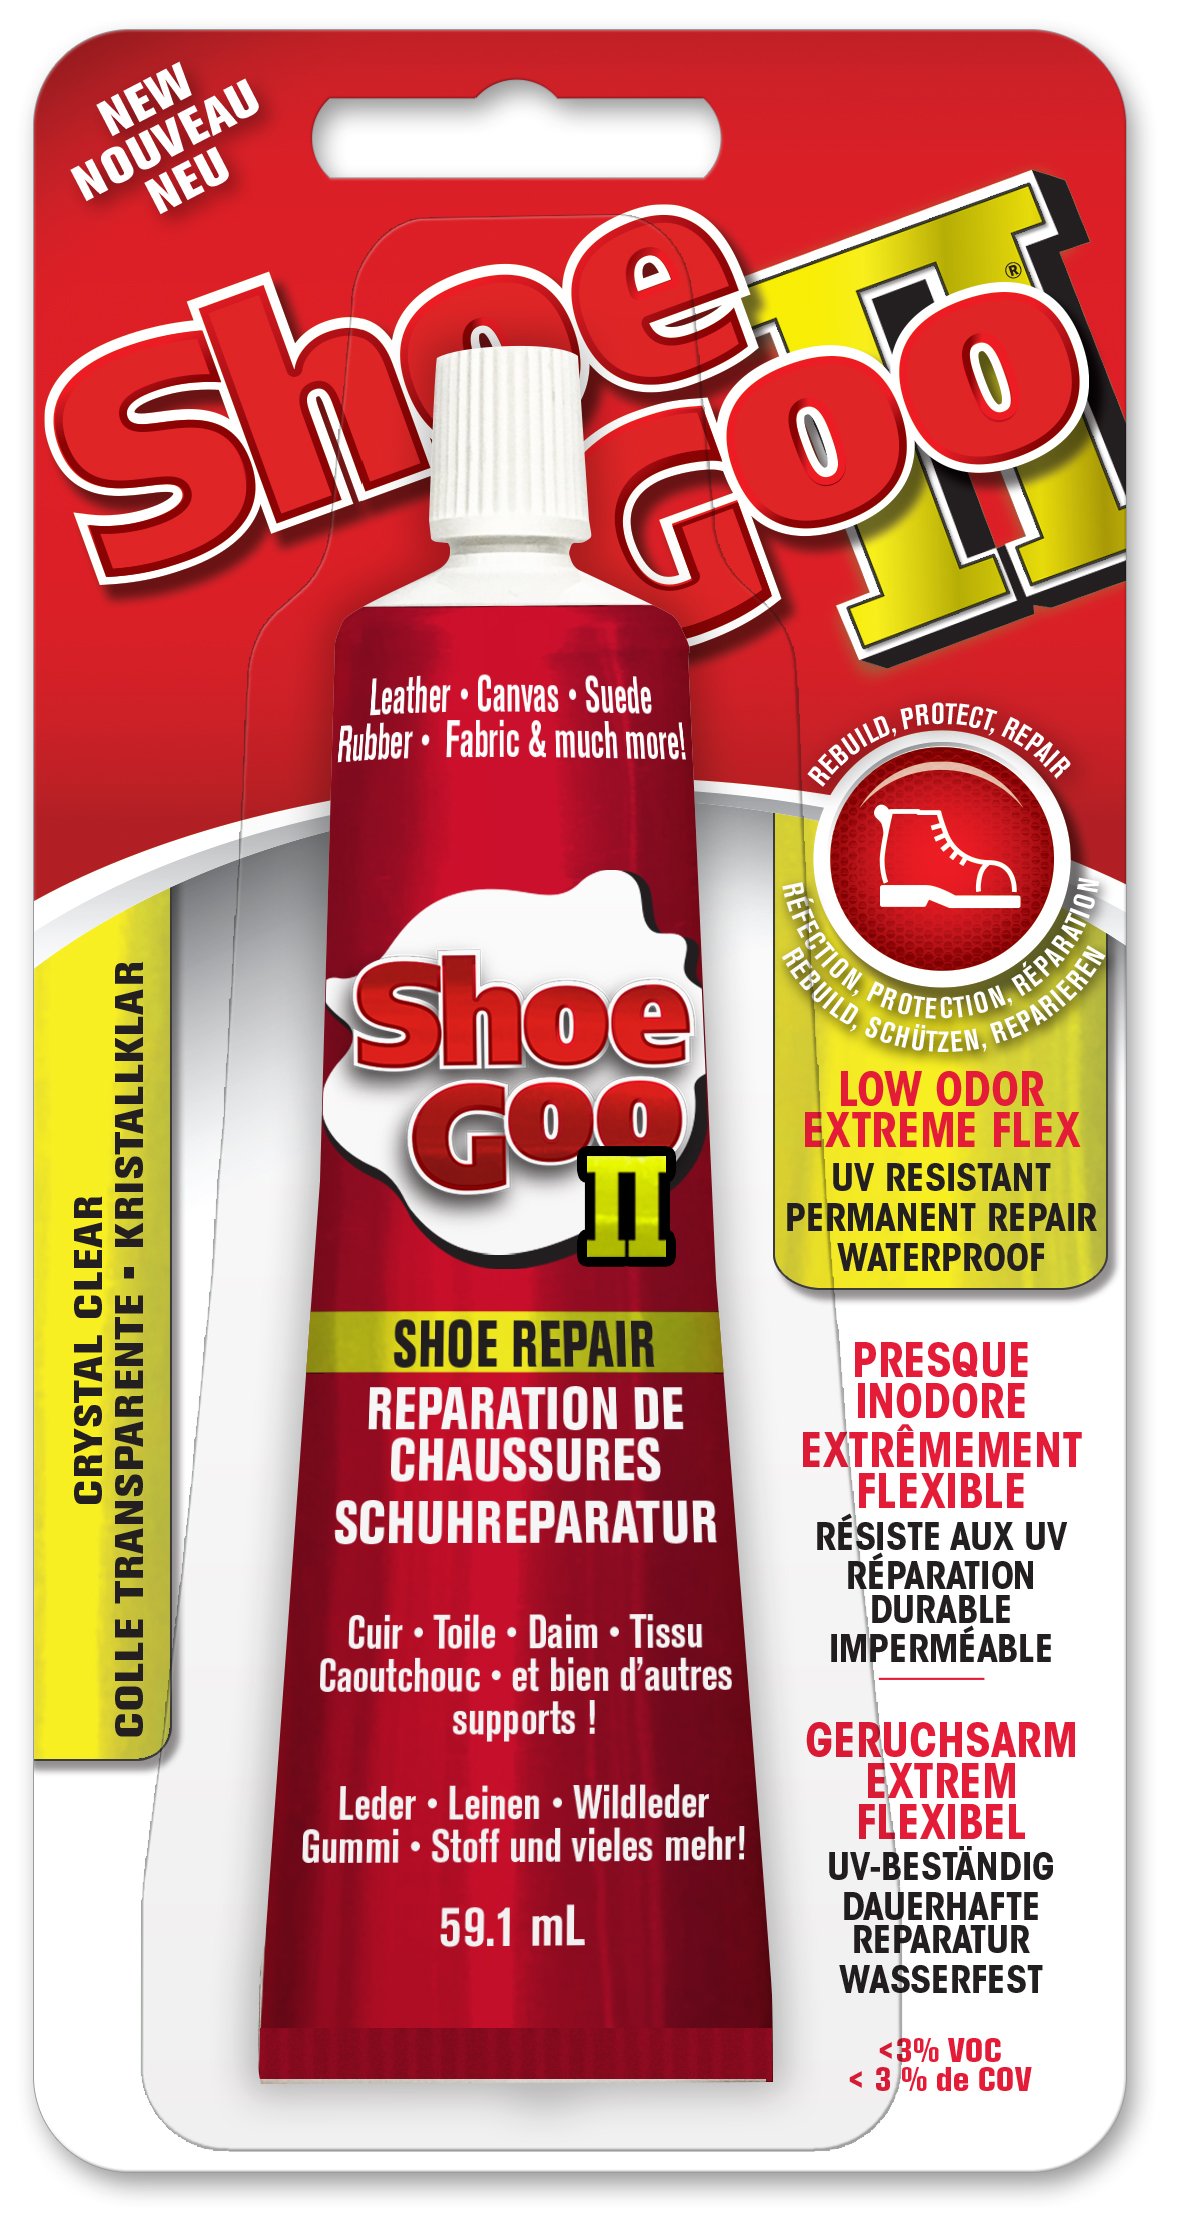 Shoe Goo II (2) UK approved Shoe Repair Glue 59.1ml